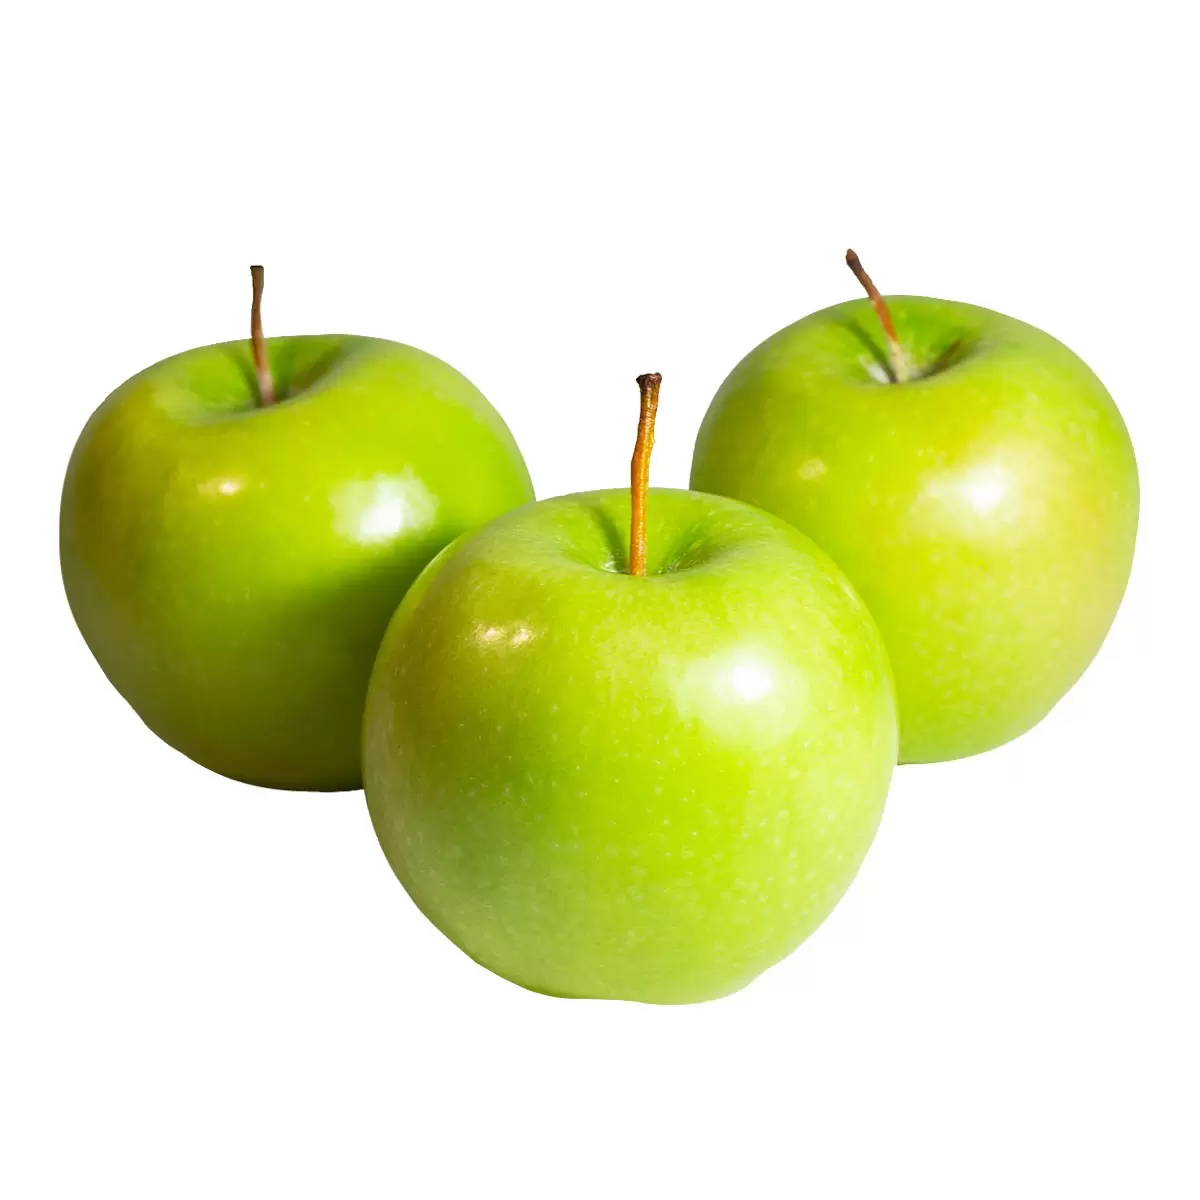 美國青蘋果 7.4公斤